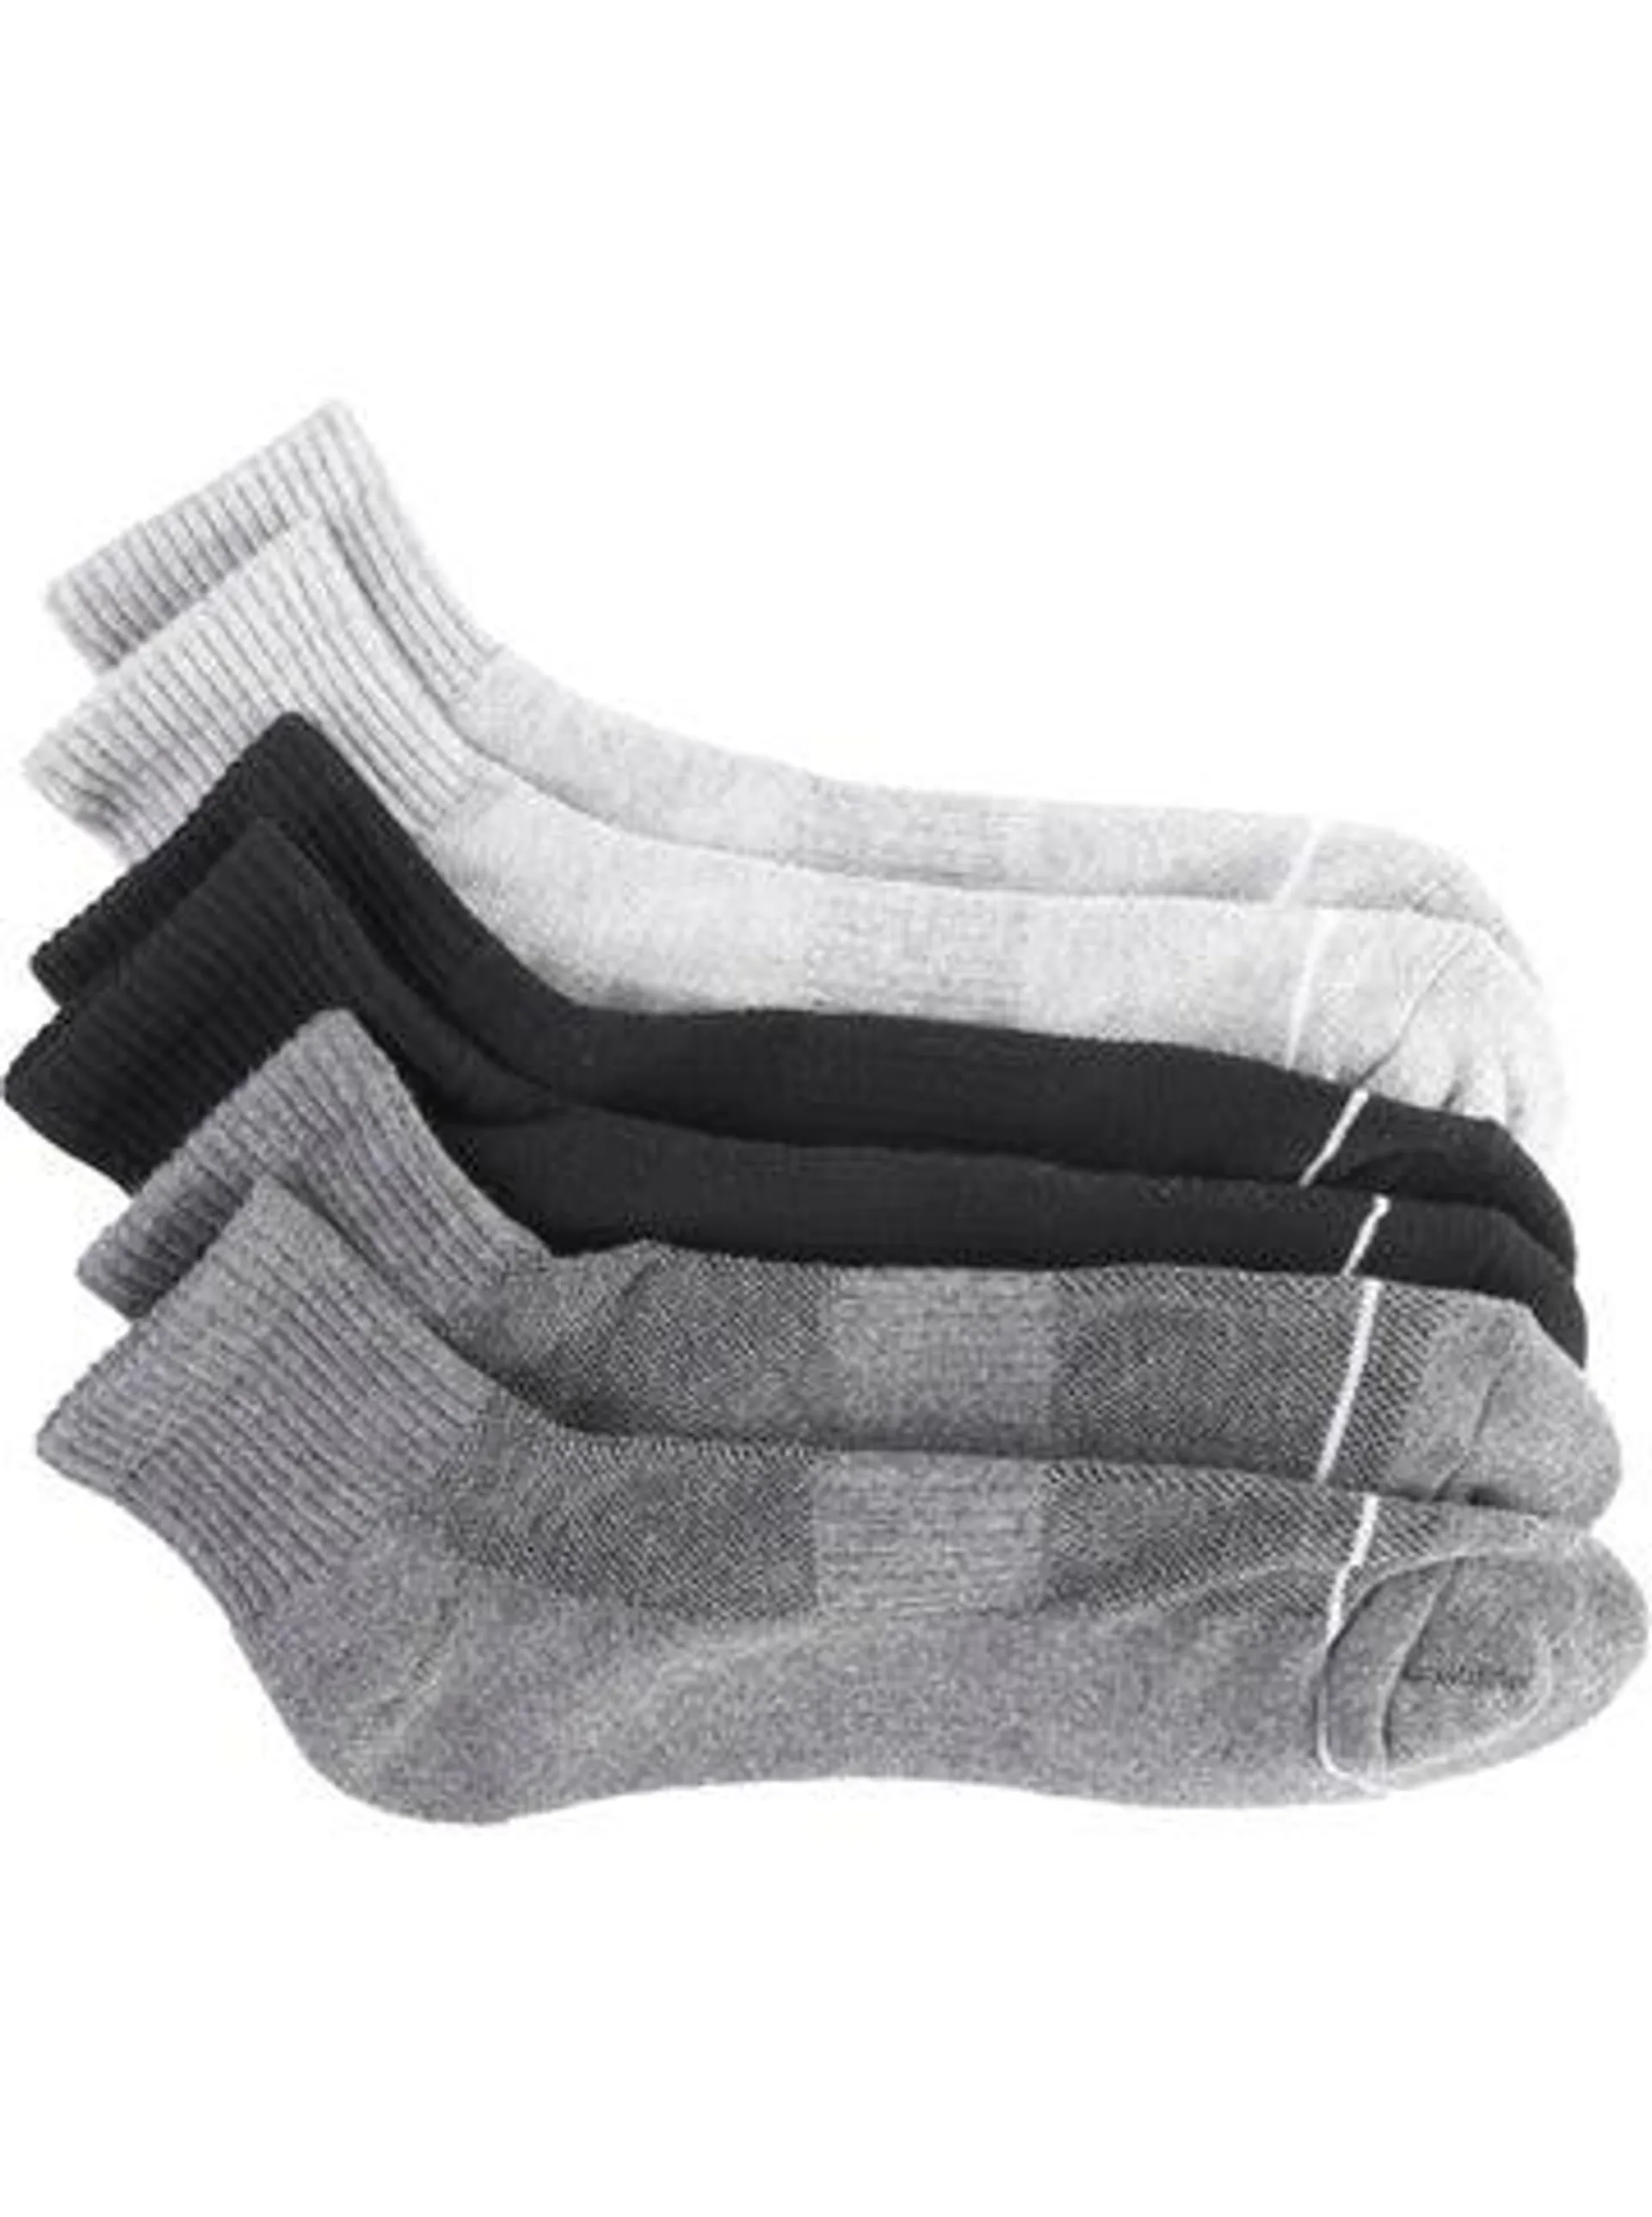 Men's 3 PK Sports Socks in Grey/charcoal/black